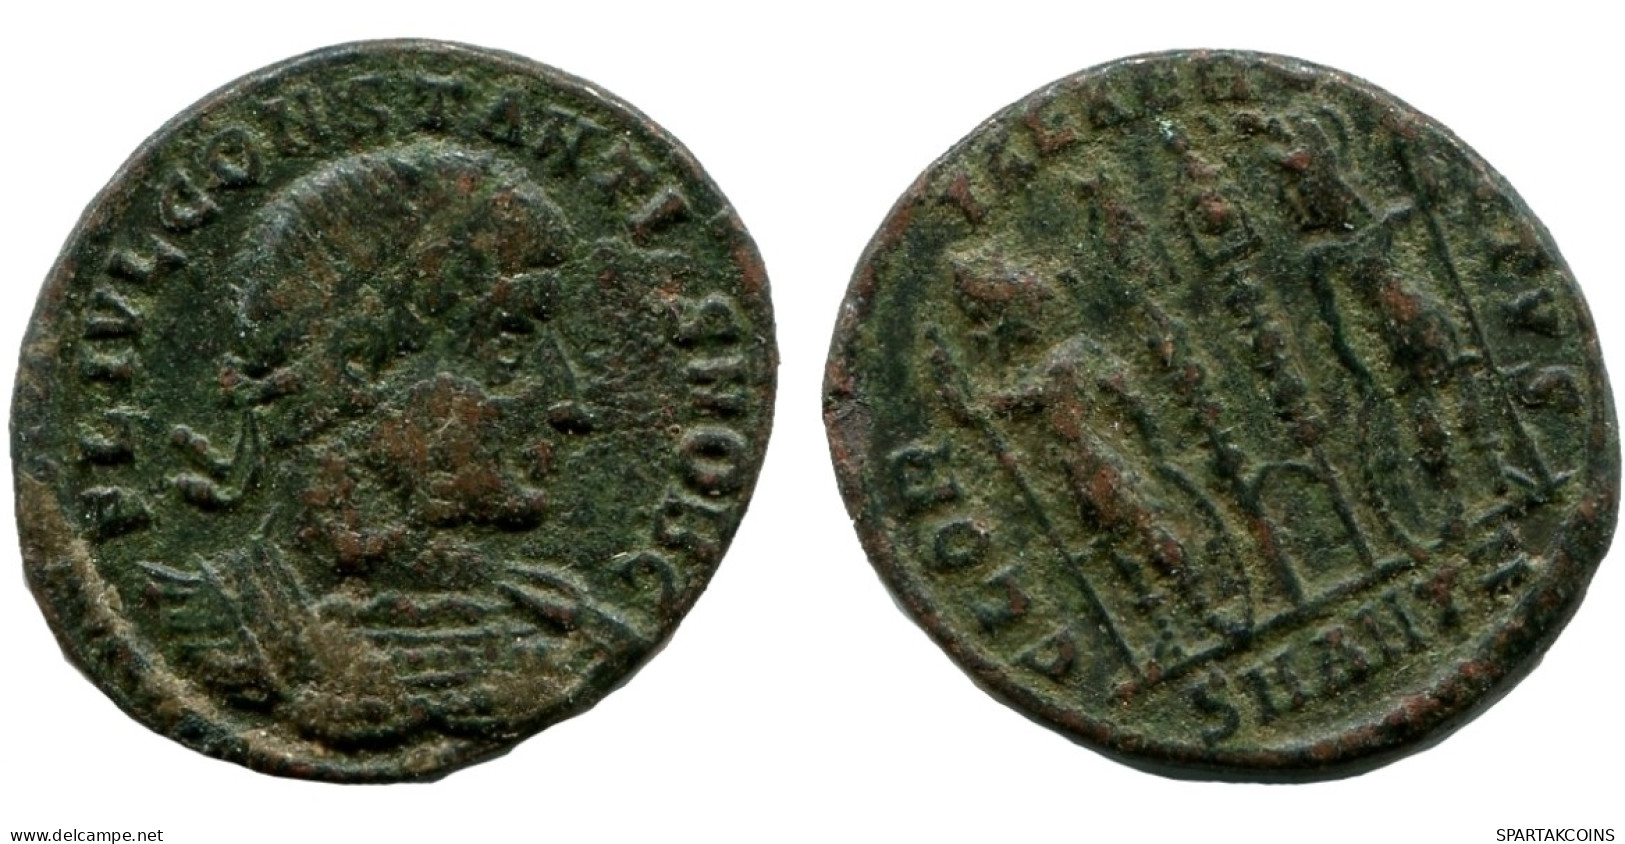 CONSTANTINE I Authentische Antike RÖMISCHEN KAISERZEIT Münze #ANC12230.12.D.A - The Christian Empire (307 AD Tot 363 AD)